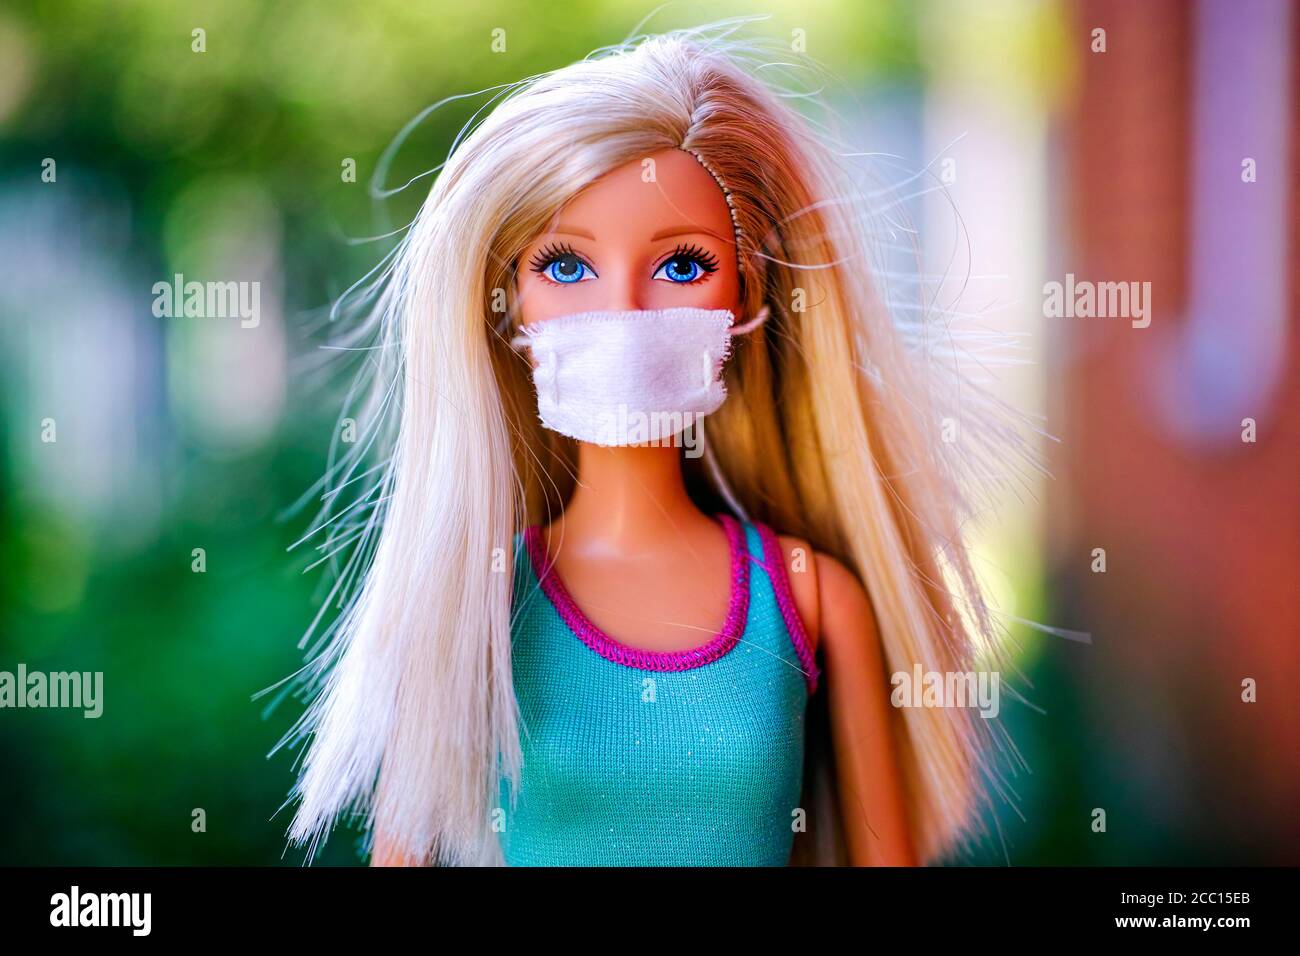 Tambow, Russische Föderation - 12. Juni 2020 zwei Barbie Puppen mit  medizinischen Masken stehen zurück an den Rücken vor gelbem Hintergrund.  Studioaufnahme Stockfotografie - Alamy